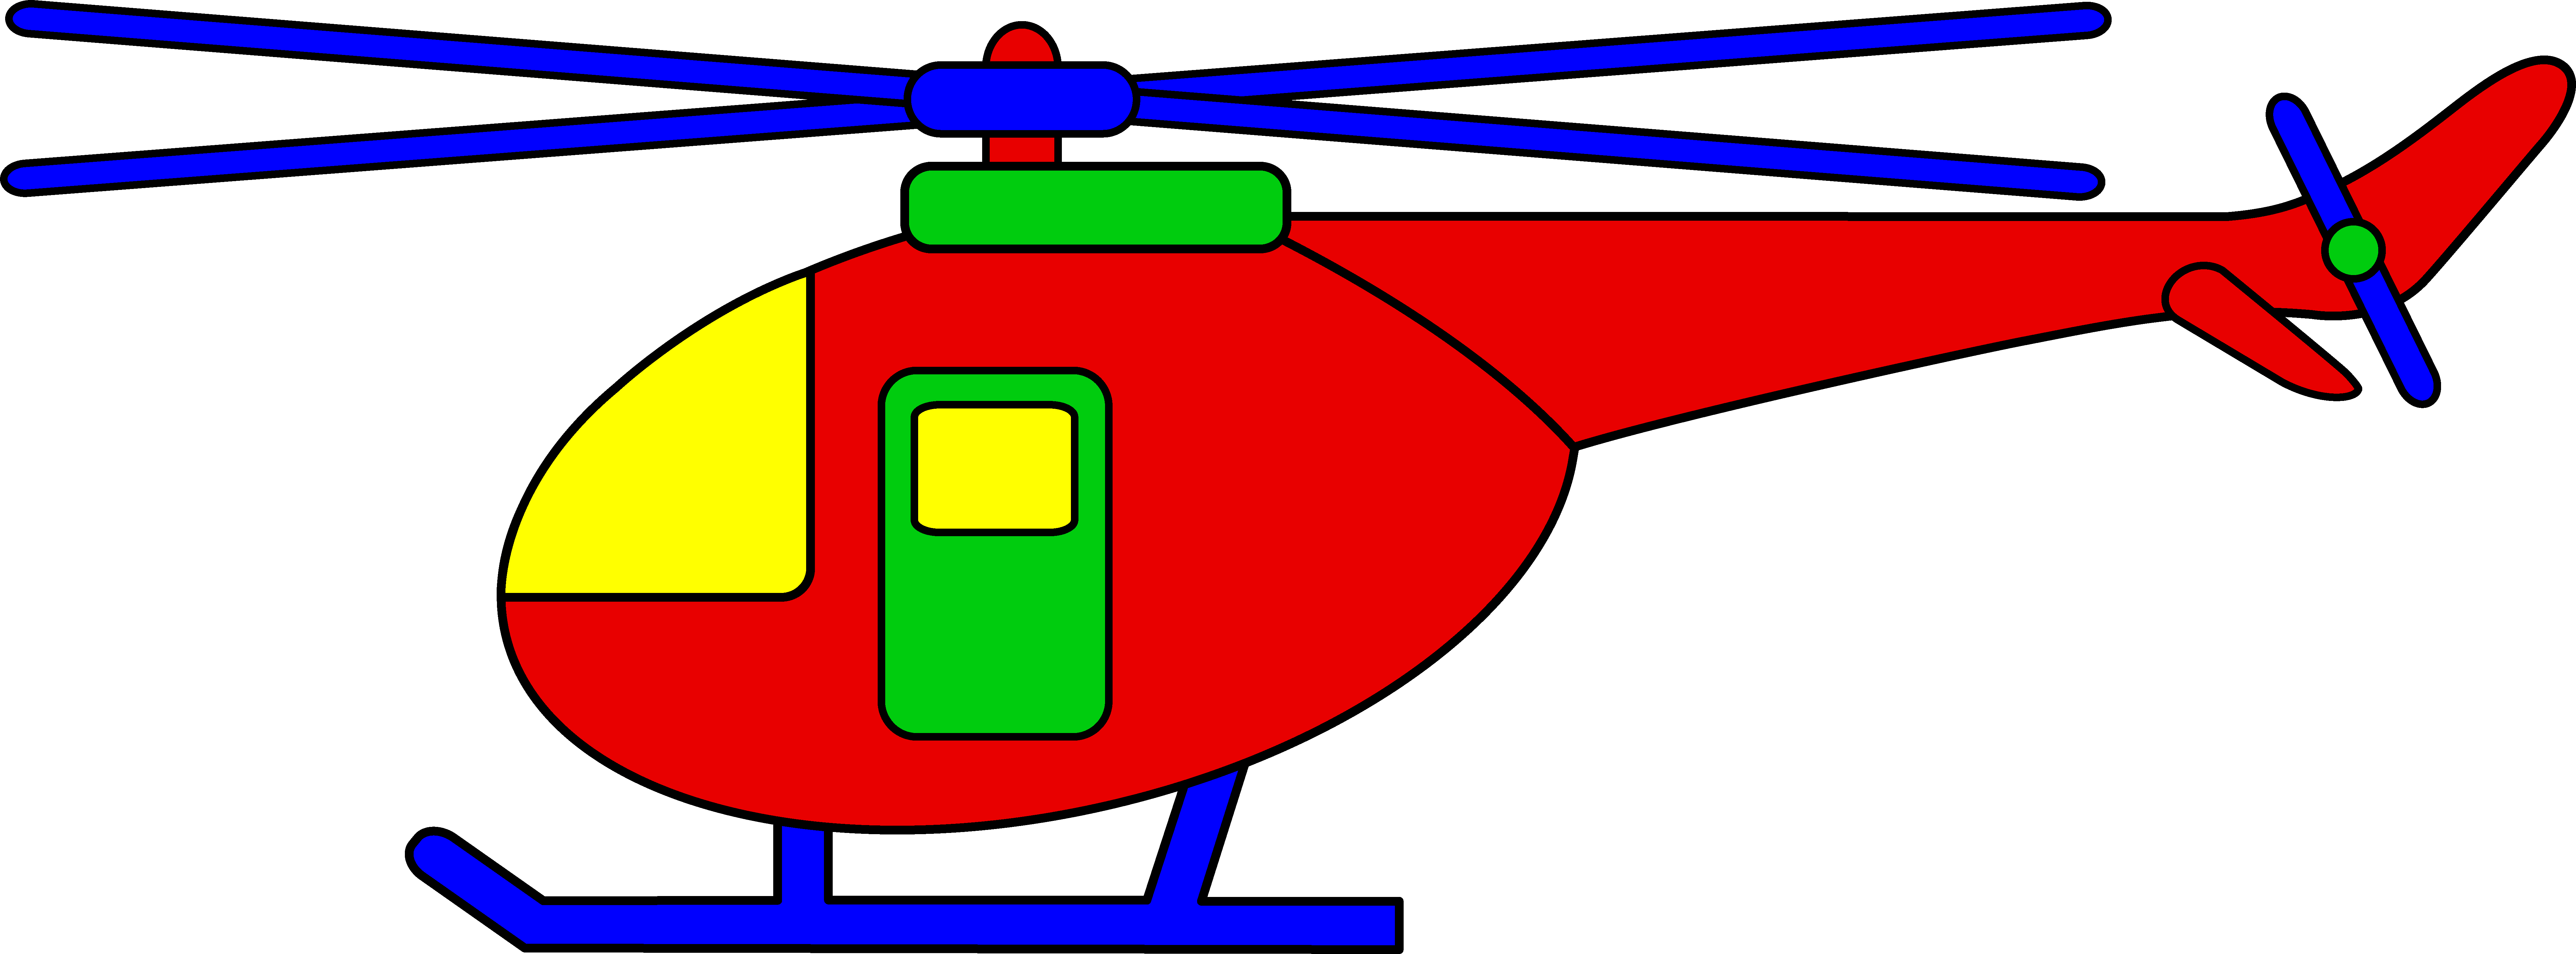 bell-model-206-jet-ranger-hel